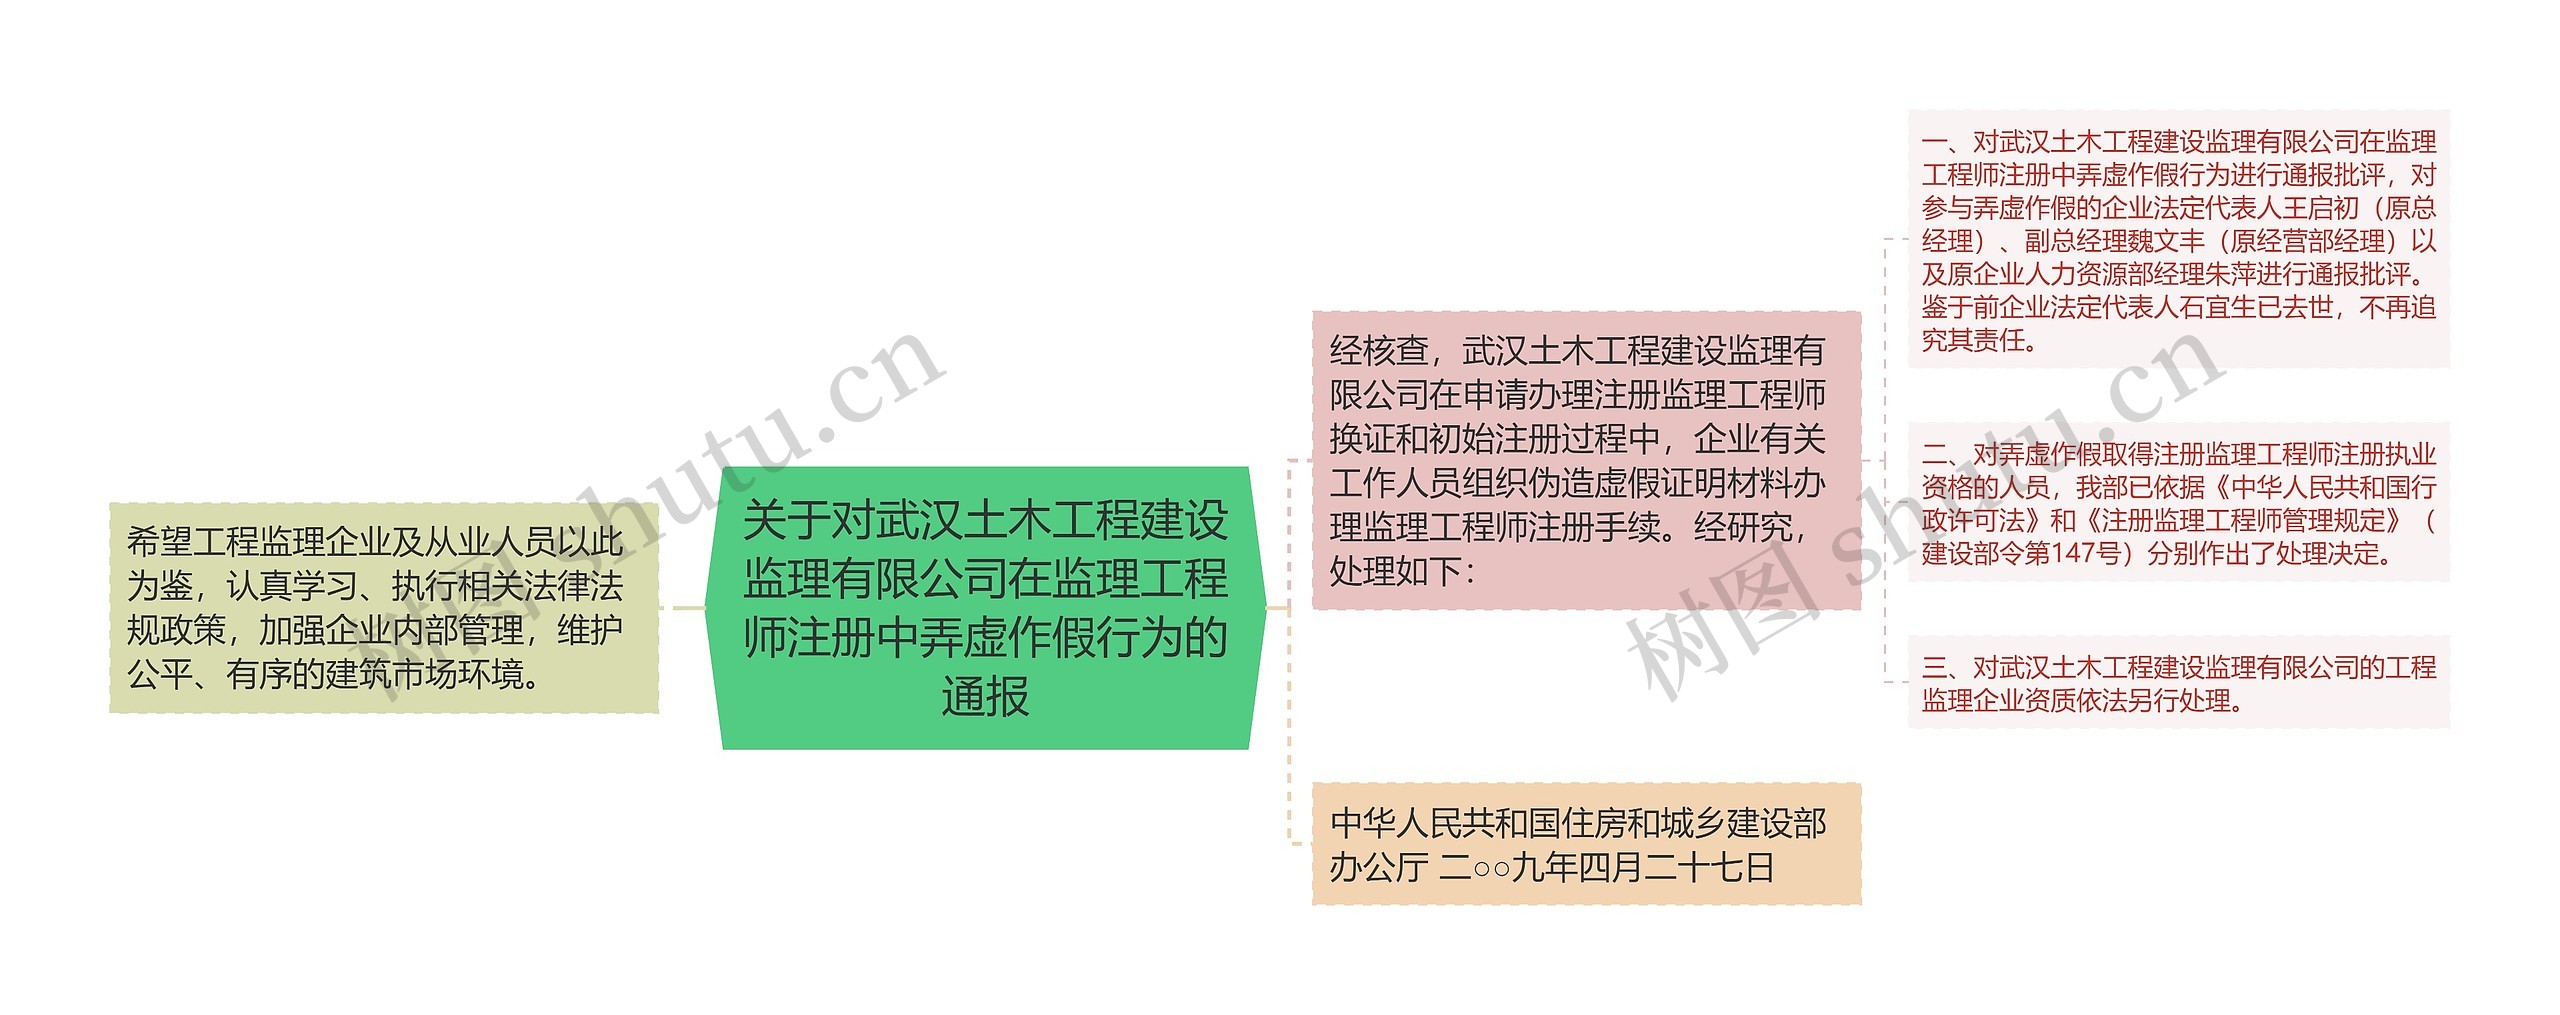 关于对武汉土木工程建设监理有限公司在监理工程师注册中弄虚作假行为的通报